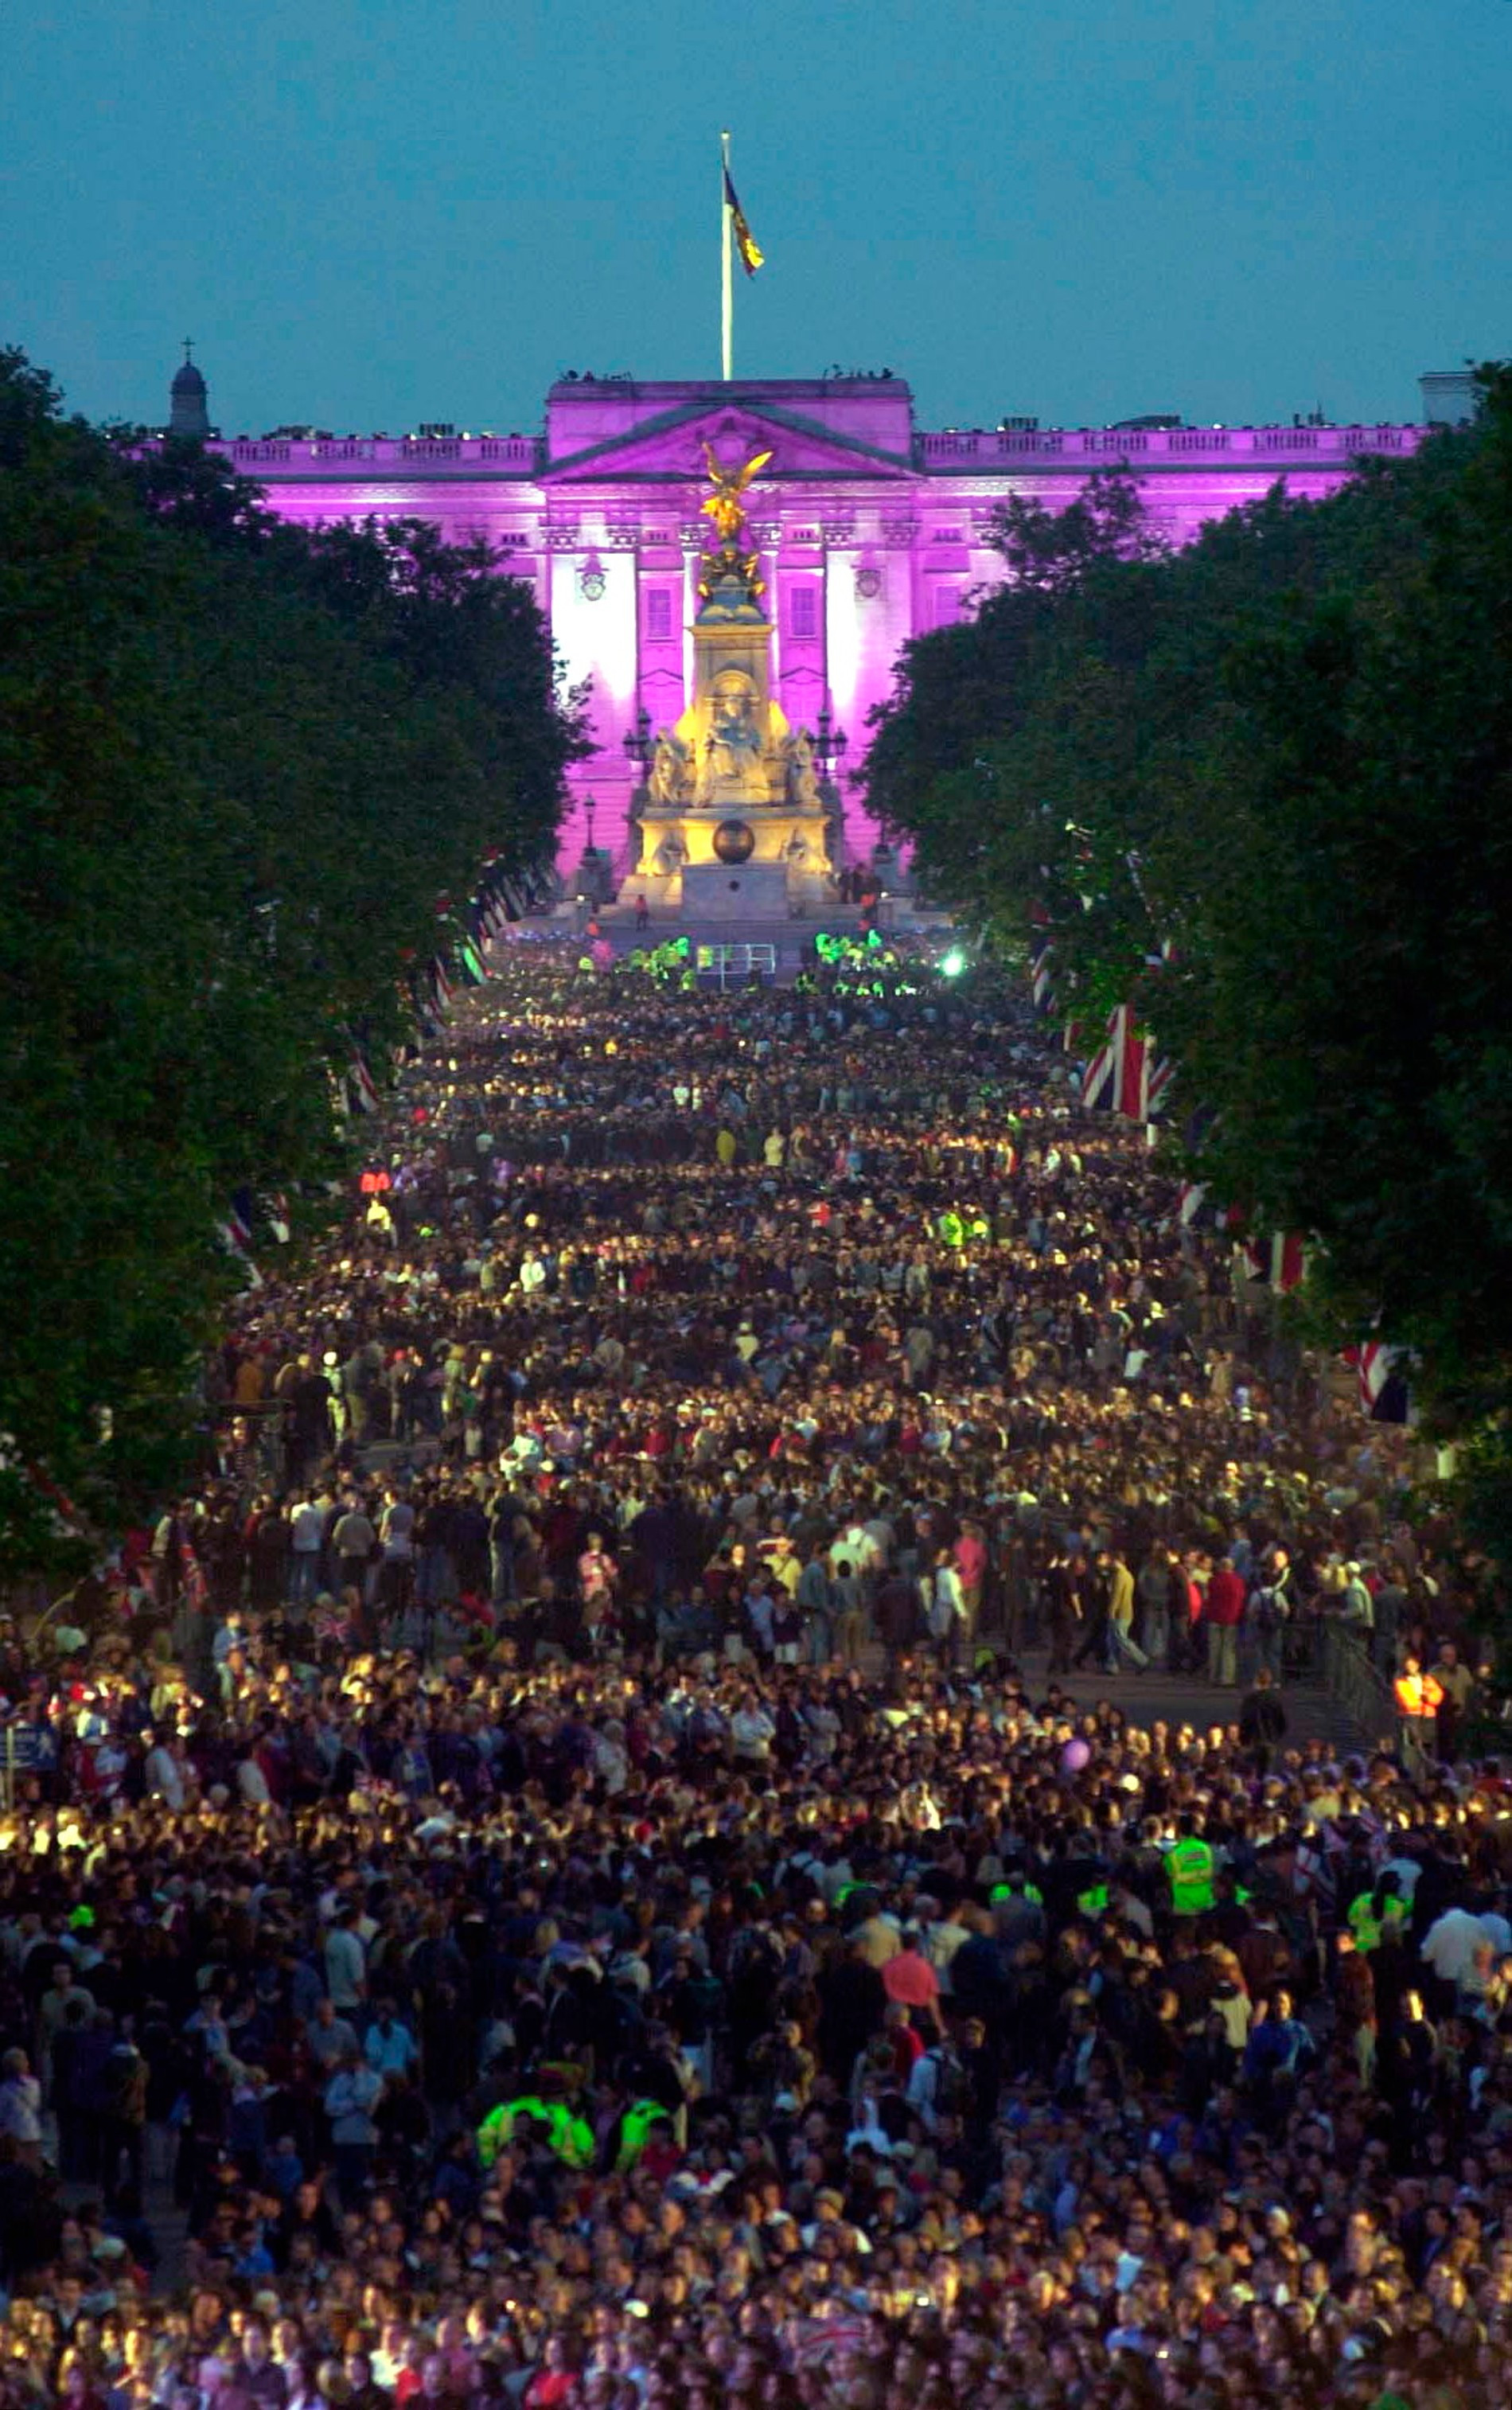 «Вечеринка во дворце» в 2002 году по случаю золотого юбилея правления Елизаветы ll